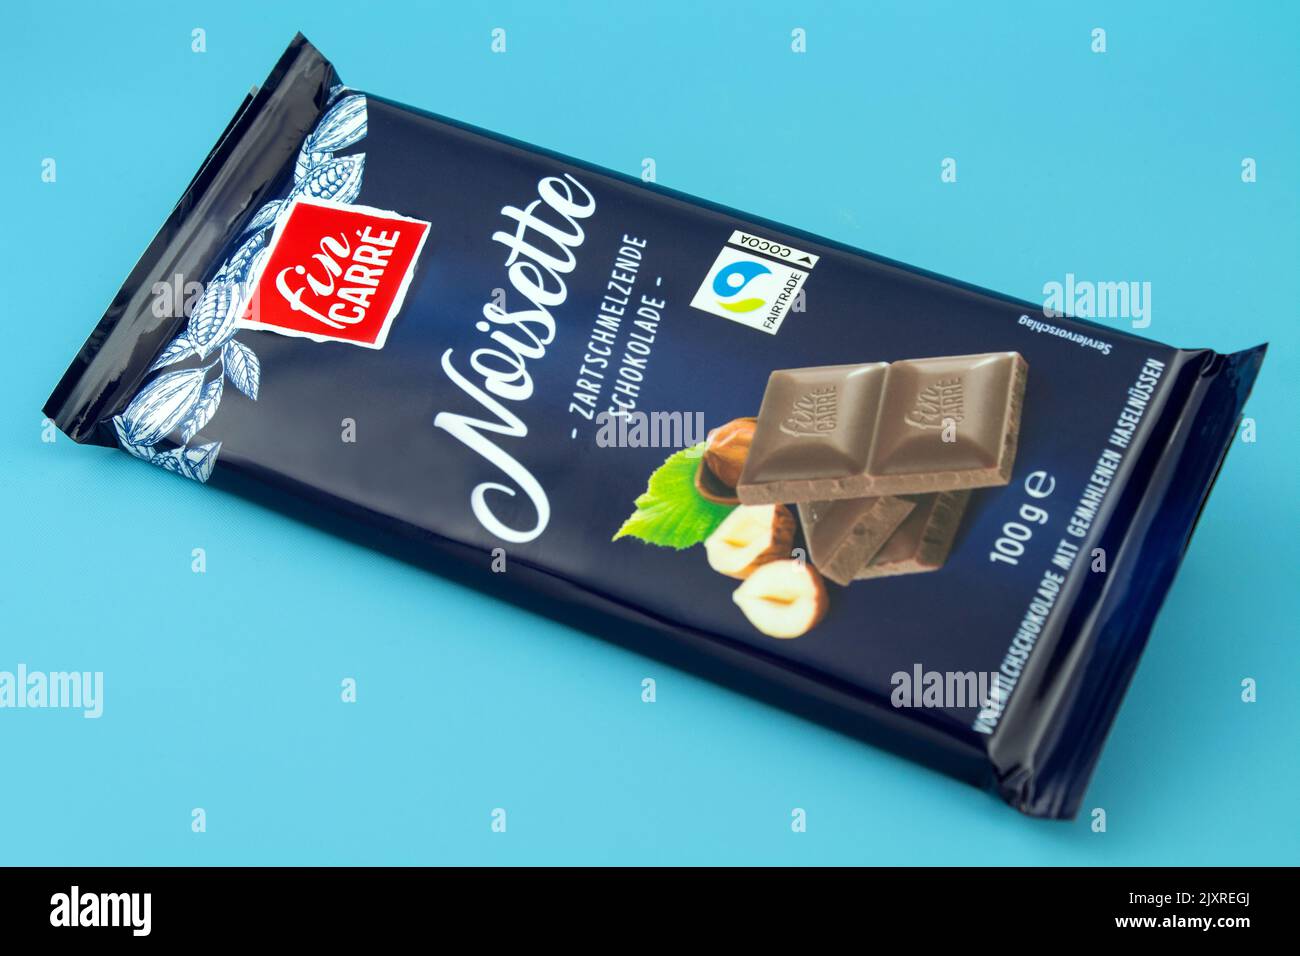 1 barretta di cioccolato Noisette con etichetta Fairtrade di fin Carre Foto Stock